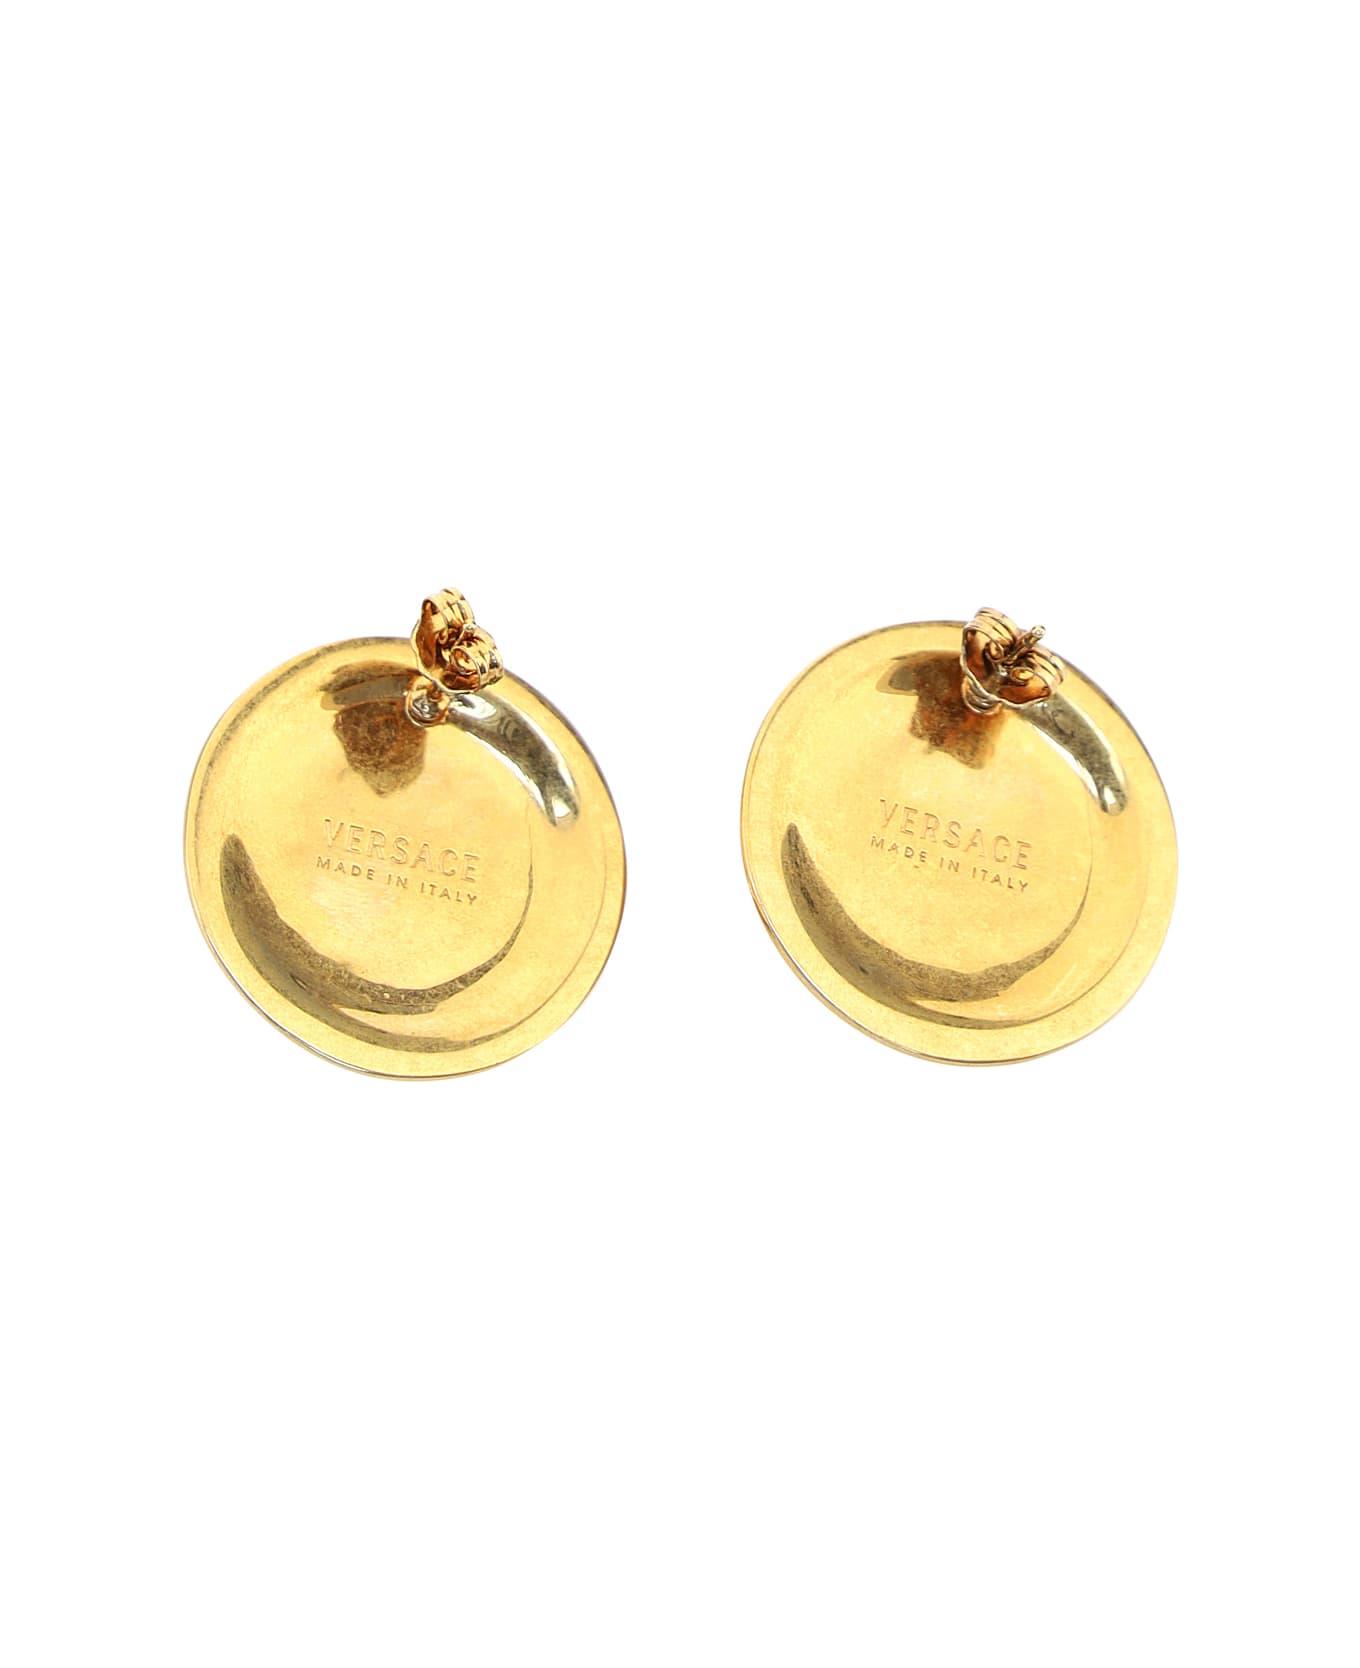 Versace Gold Brass Tribute Medusa Earrings - Kot Tribute Gold